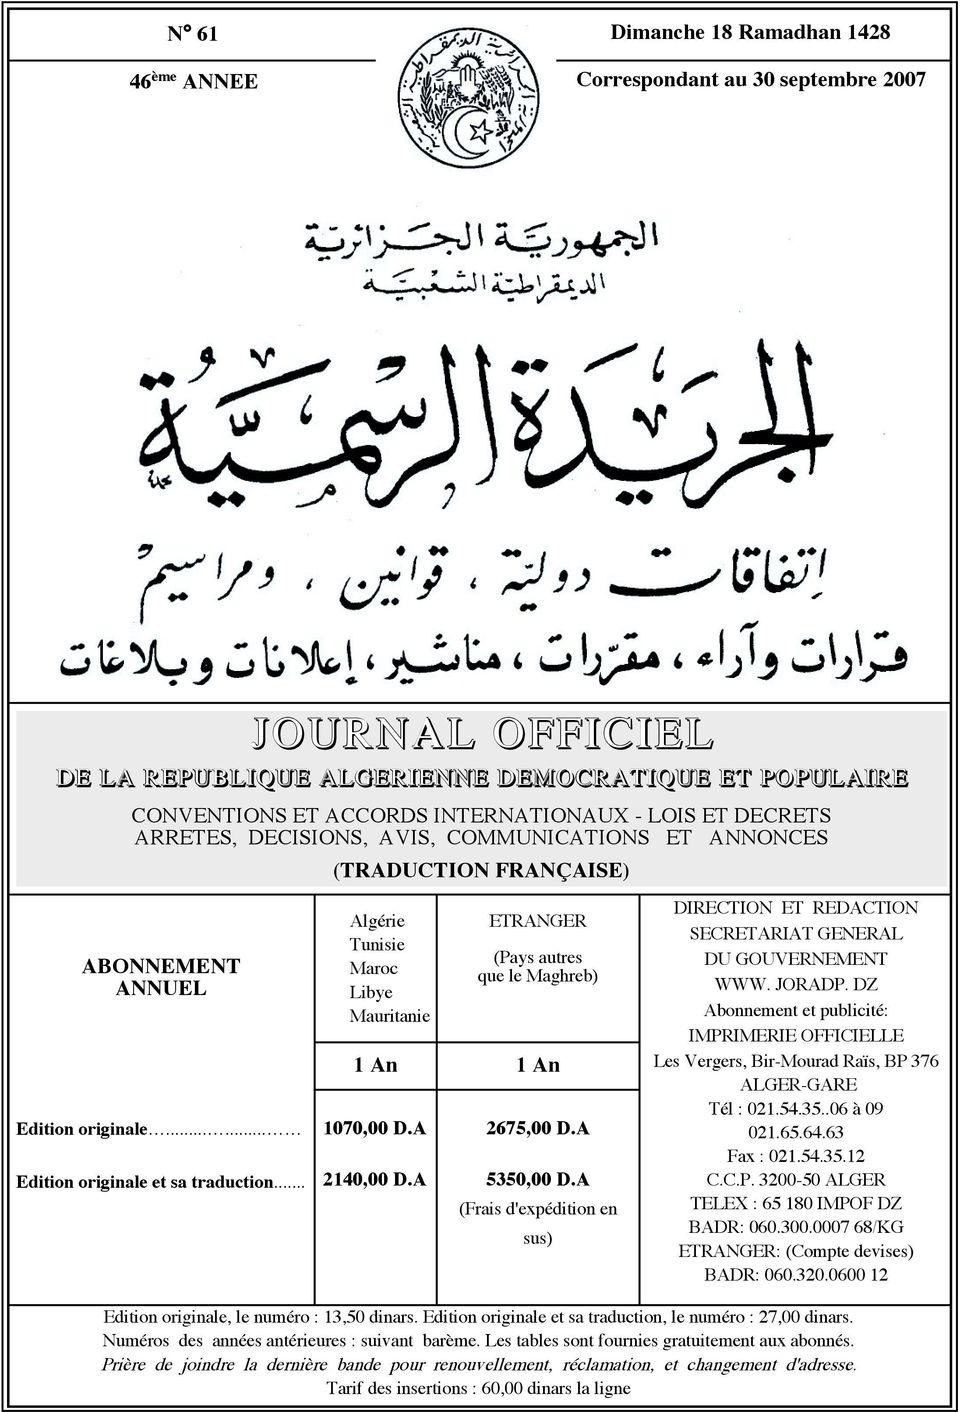 .. Algérie Tunisie Maroc Libye Mauritanie ETRANGER (Pays autres que le Maghreb) An An 070,00 D.A 40,00 D.A 675,00 D.A 5350,00 D.